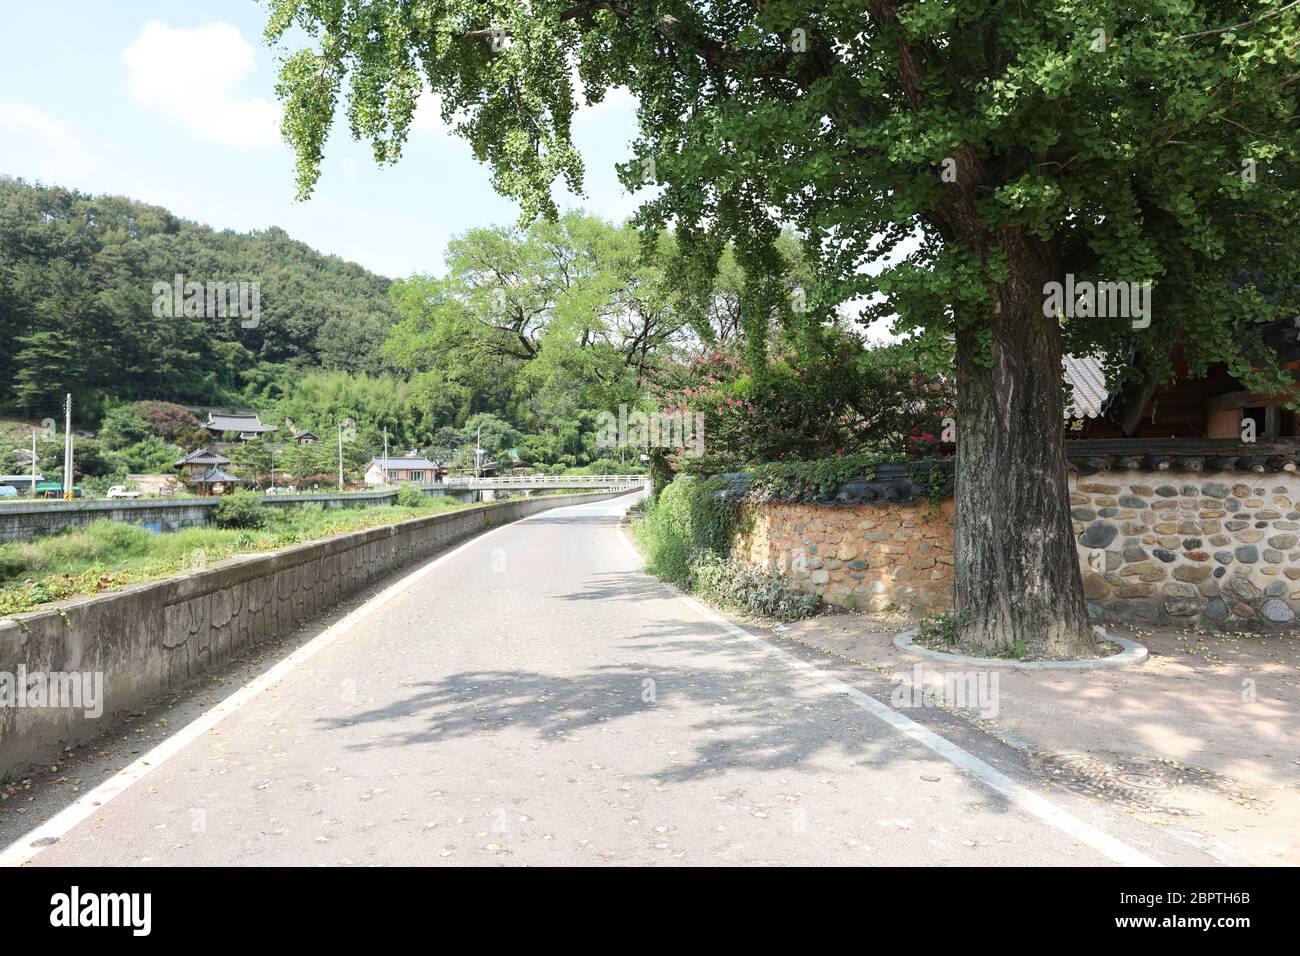 Entrée de la route du vieux village en Corée avec de grands arbres. Banque D'Images